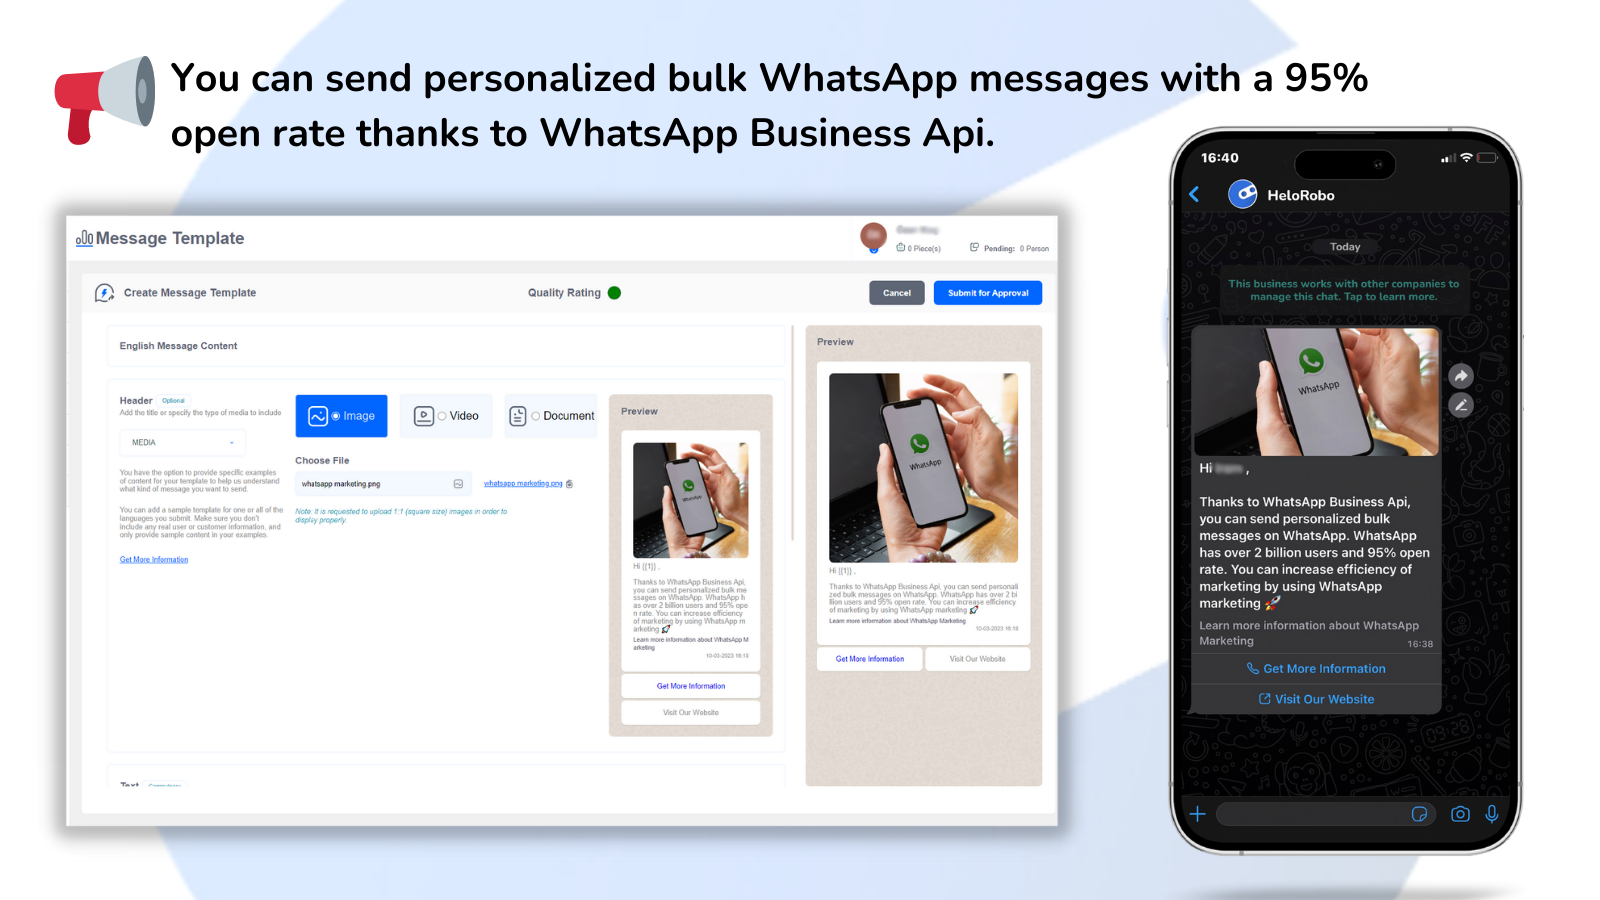 WhatsApp Api, Whatsapp Marketing: Send personalized bulk message